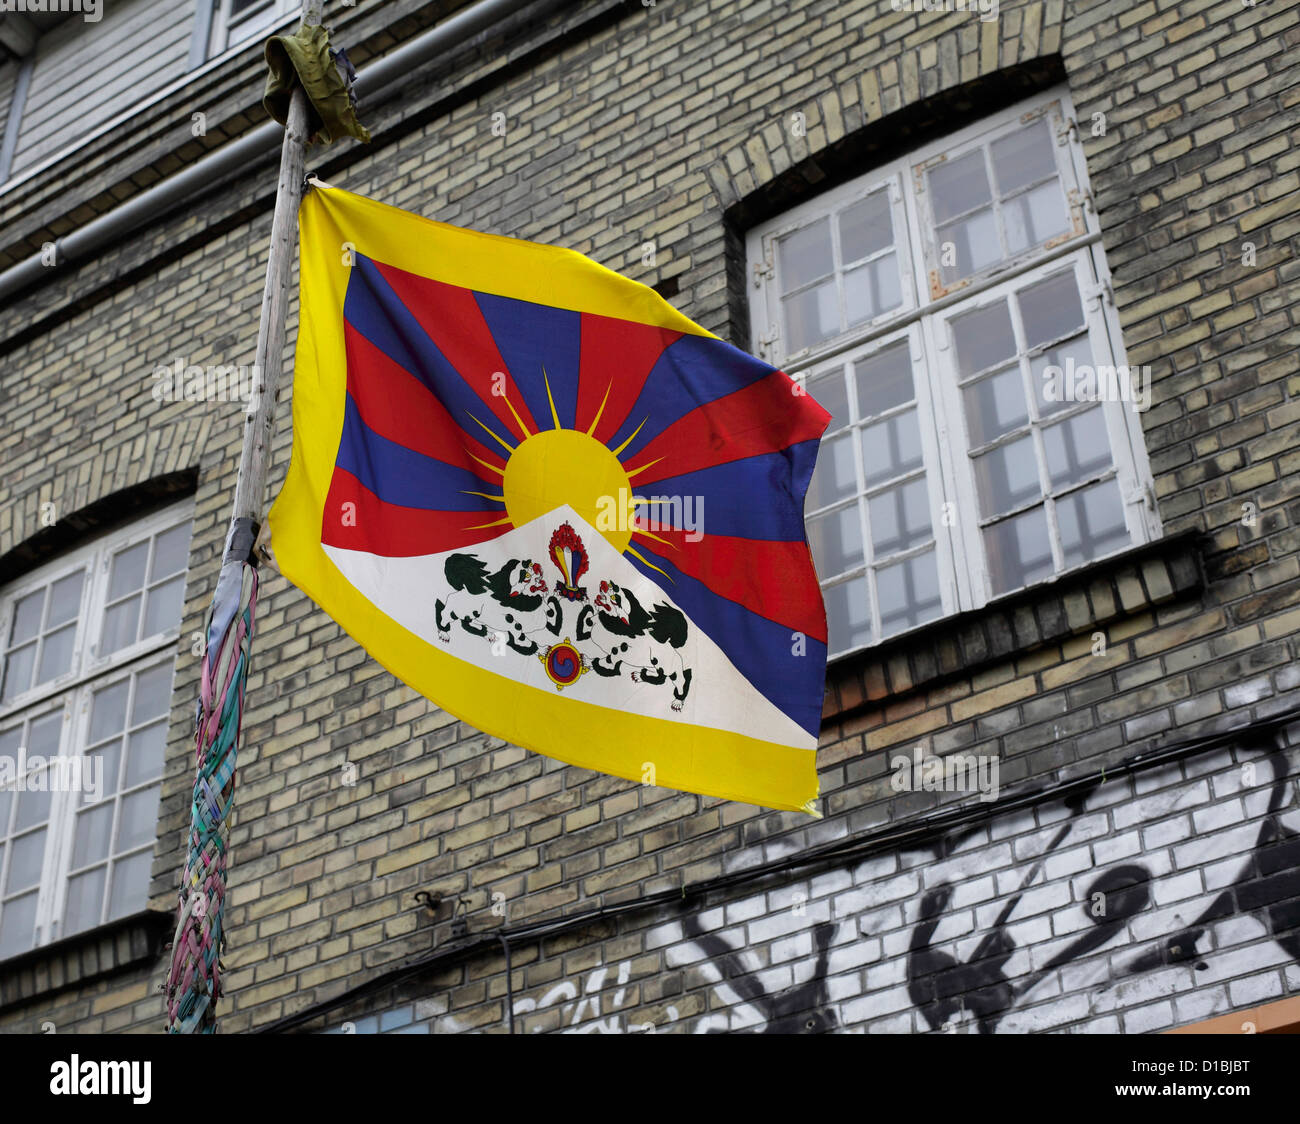 Un 'Free Tibet' flag flying l'extérieur d'un bâtiment à Christiania, Copenhague, Danemark. Banque D'Images